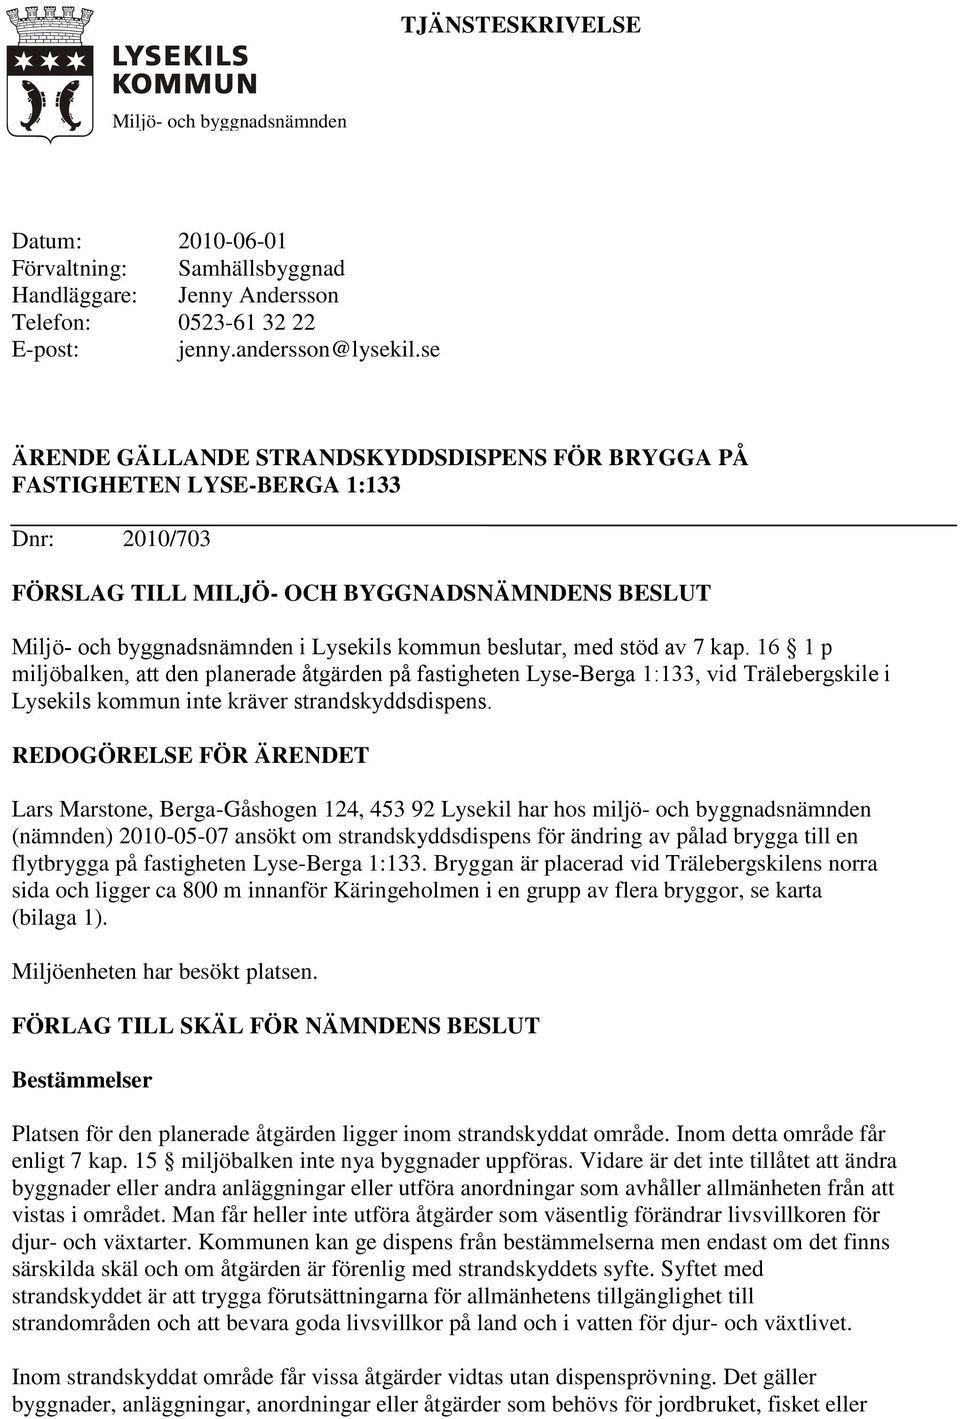 med stöd av 7 kap. 16 1 p miljöbalken, att den planerade åtgärden på fastigheten Lyse-Berga 1:133, vid Trälebergskile i Lysekils kommun inte kräver strandskyddsdispens.